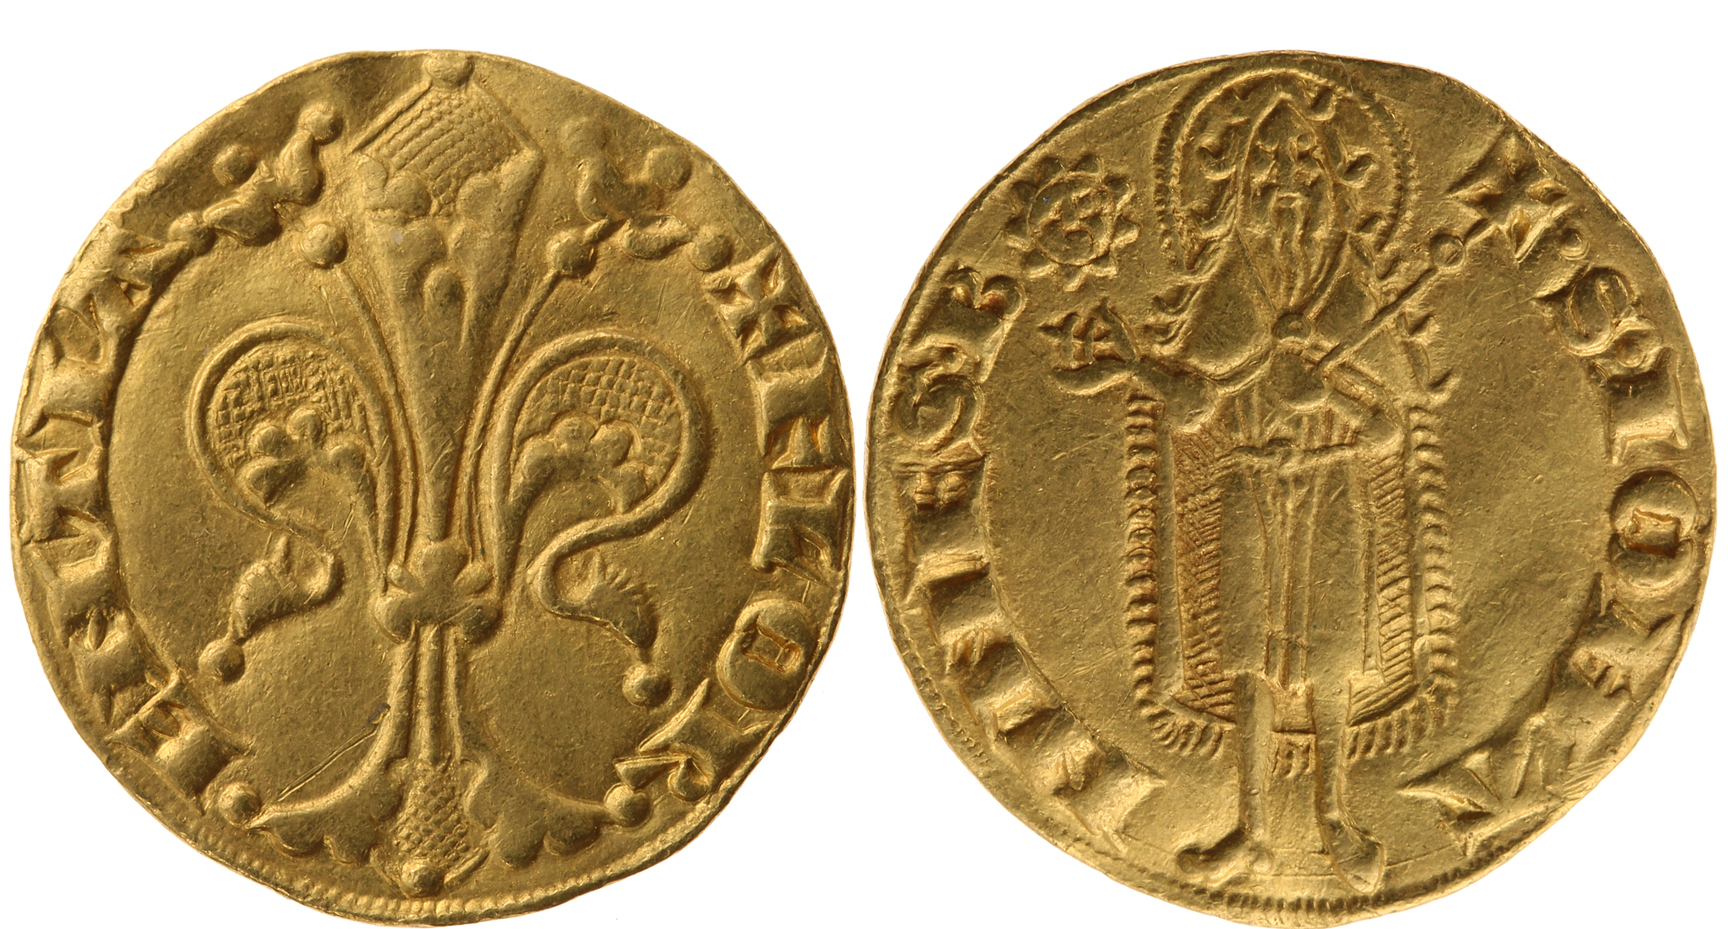 Der Goldgulden von Florenz - Fiorino d'oro aus dem Jahre 1318/1319 ©Bundesbank